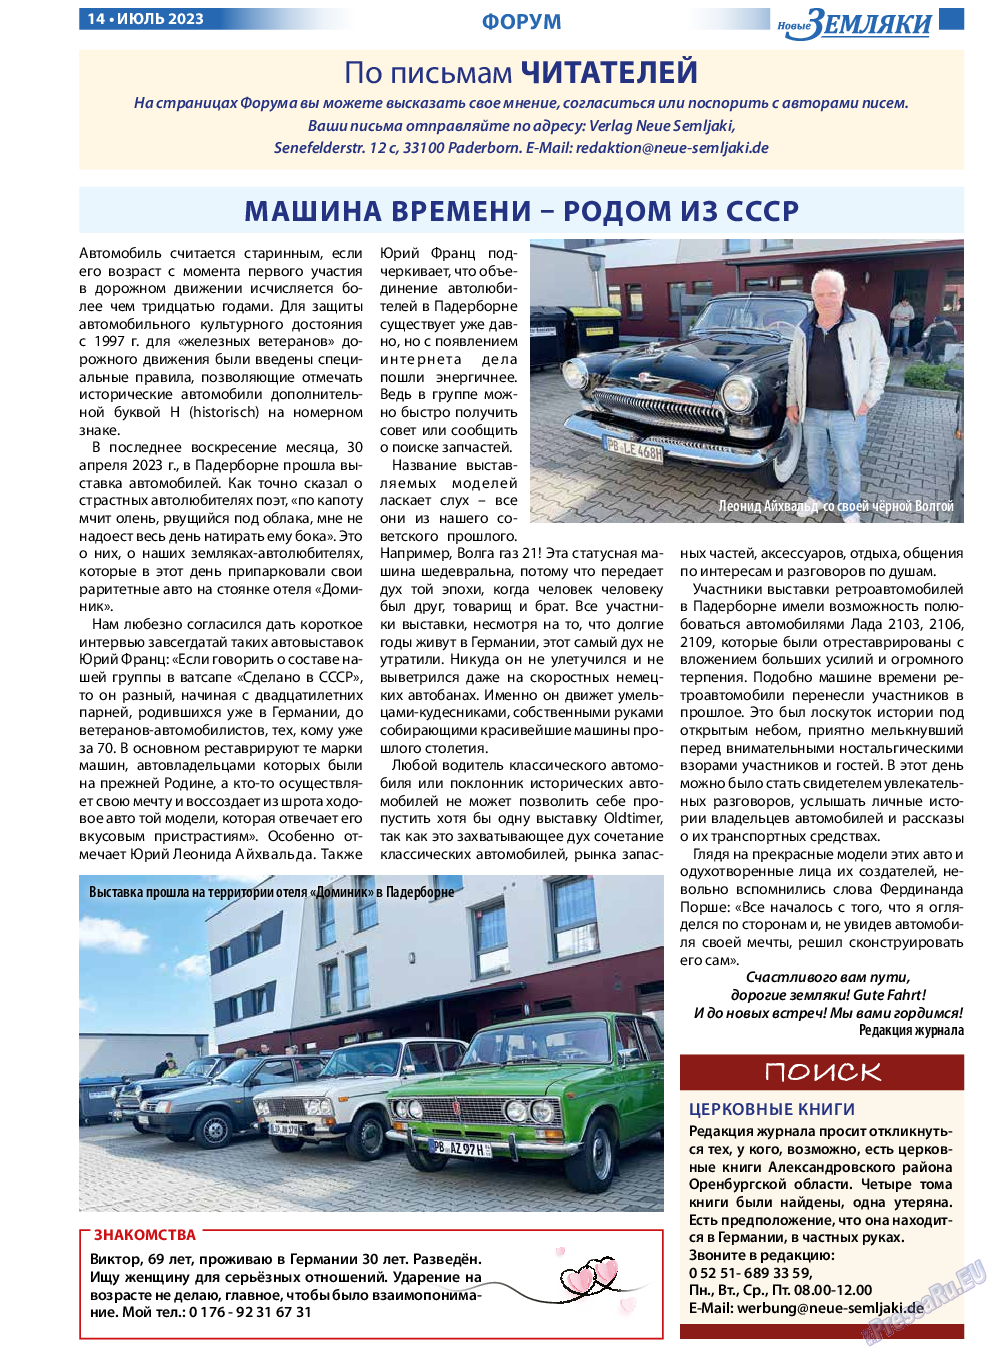 Новые Земляки, газета. 2023 №7 стр.14